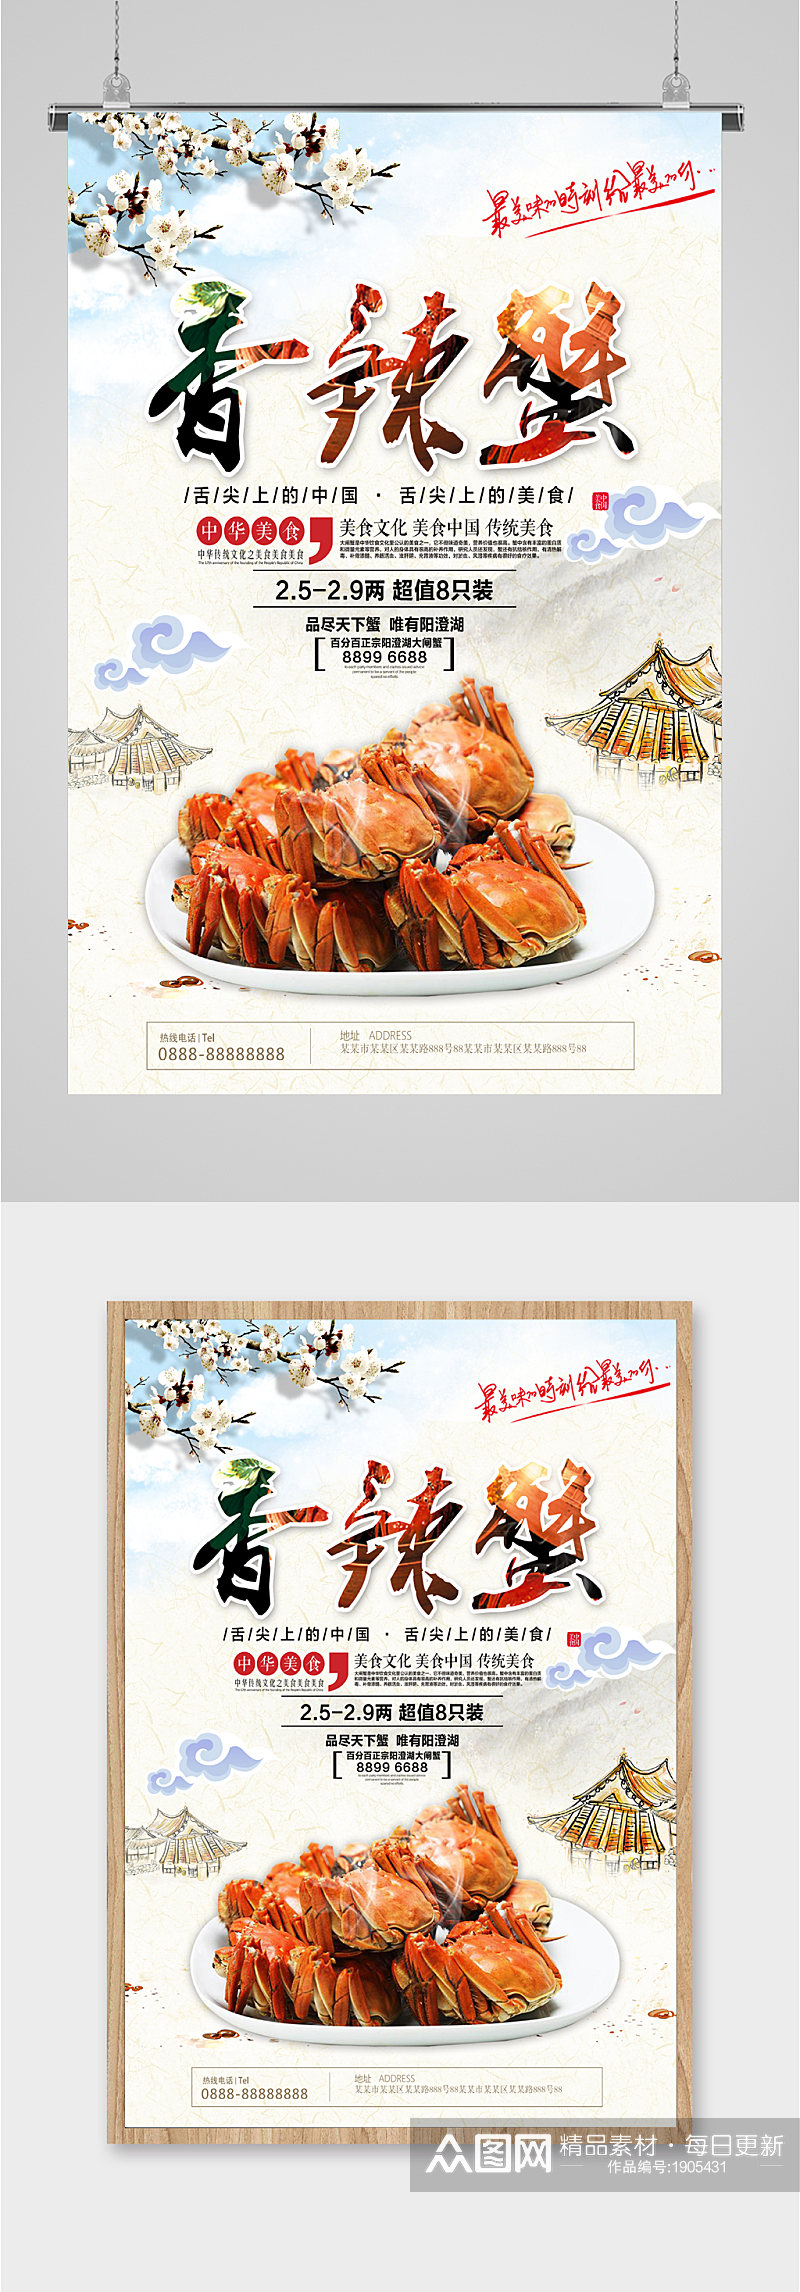 香辣蟹螃蟹中国美食海报素材